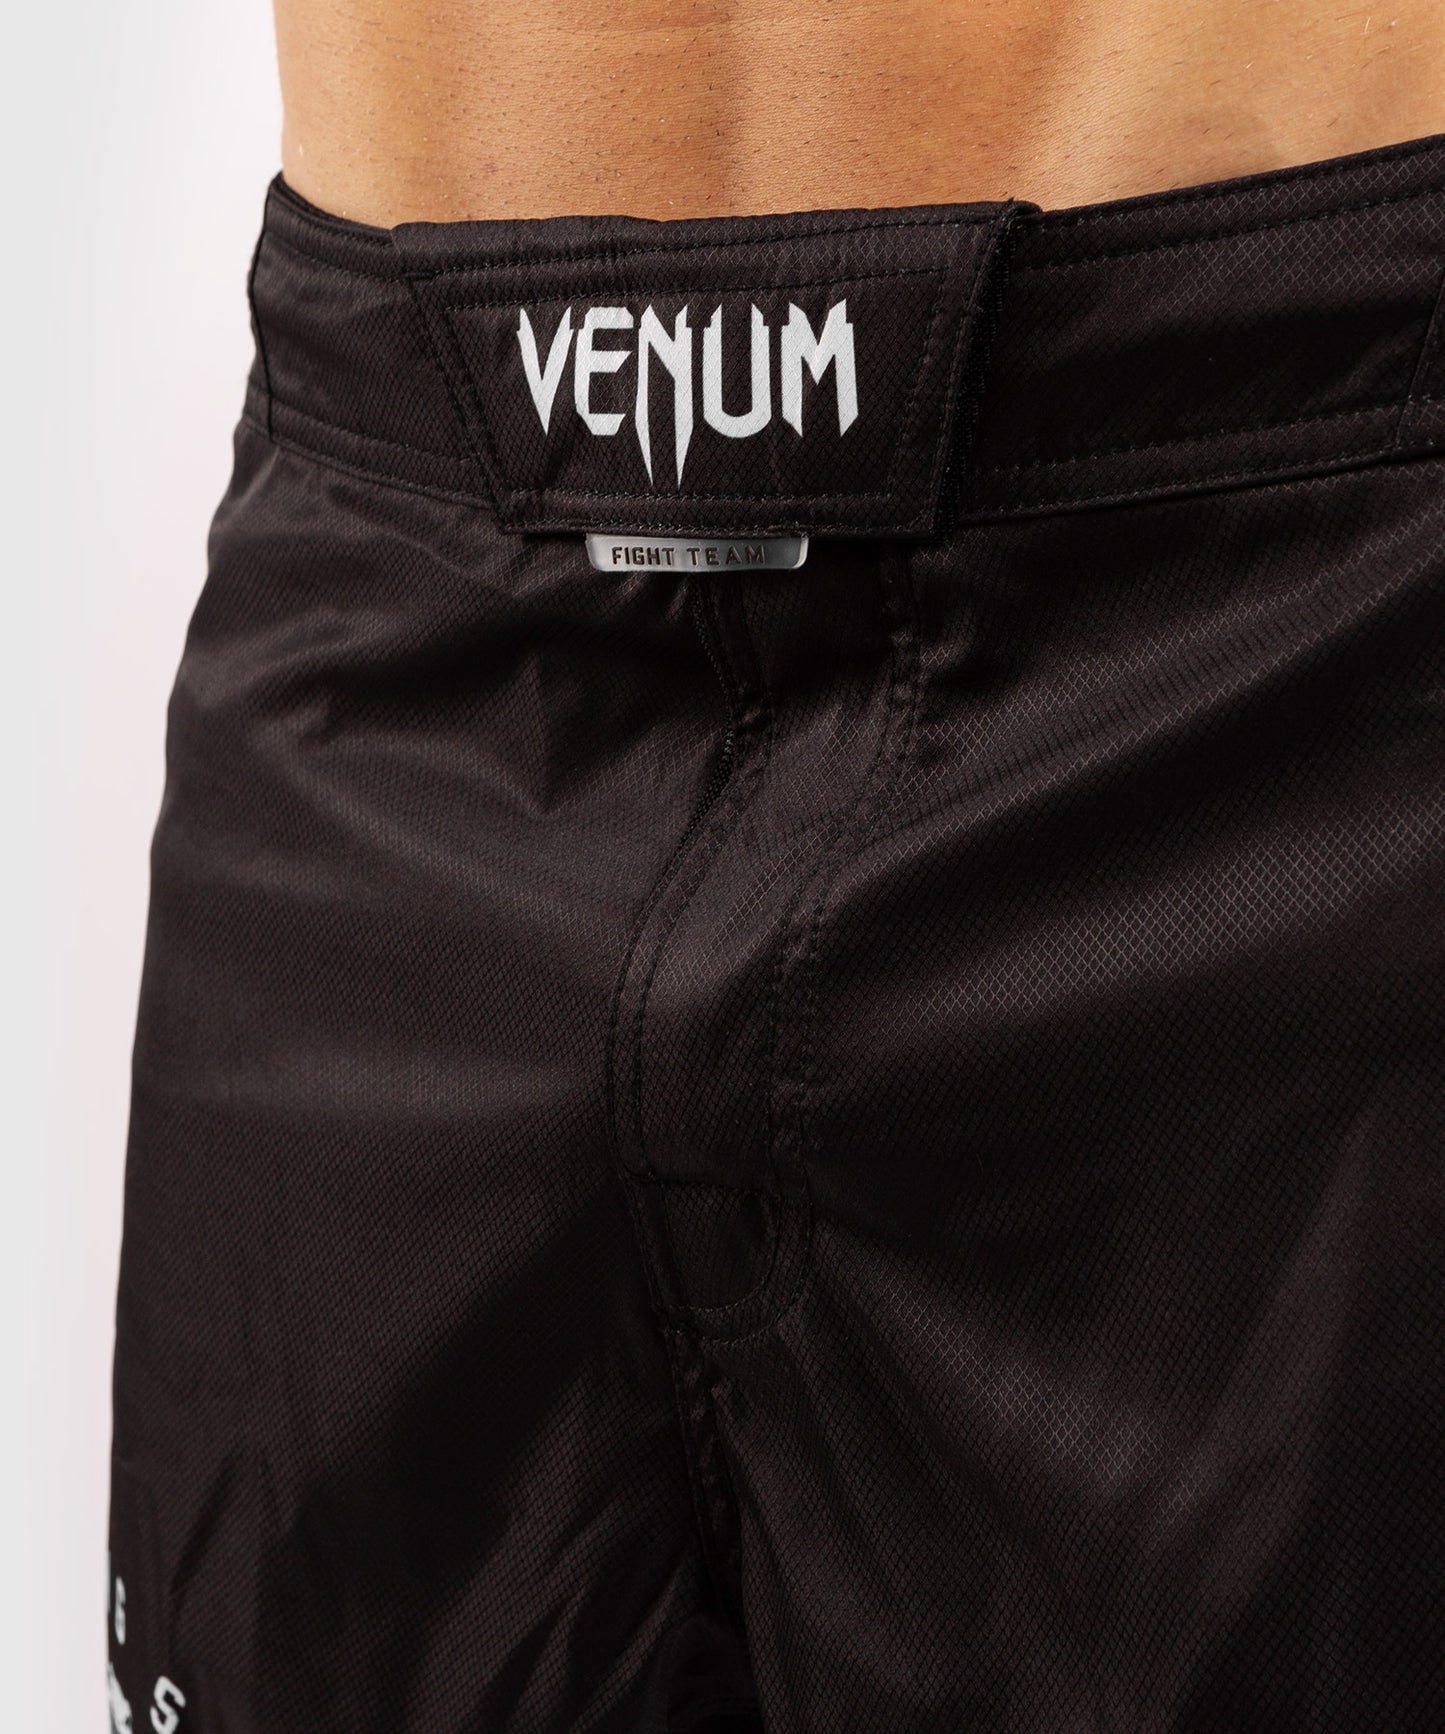 Pantalones MMA Venum Signature - Negro/Blanco